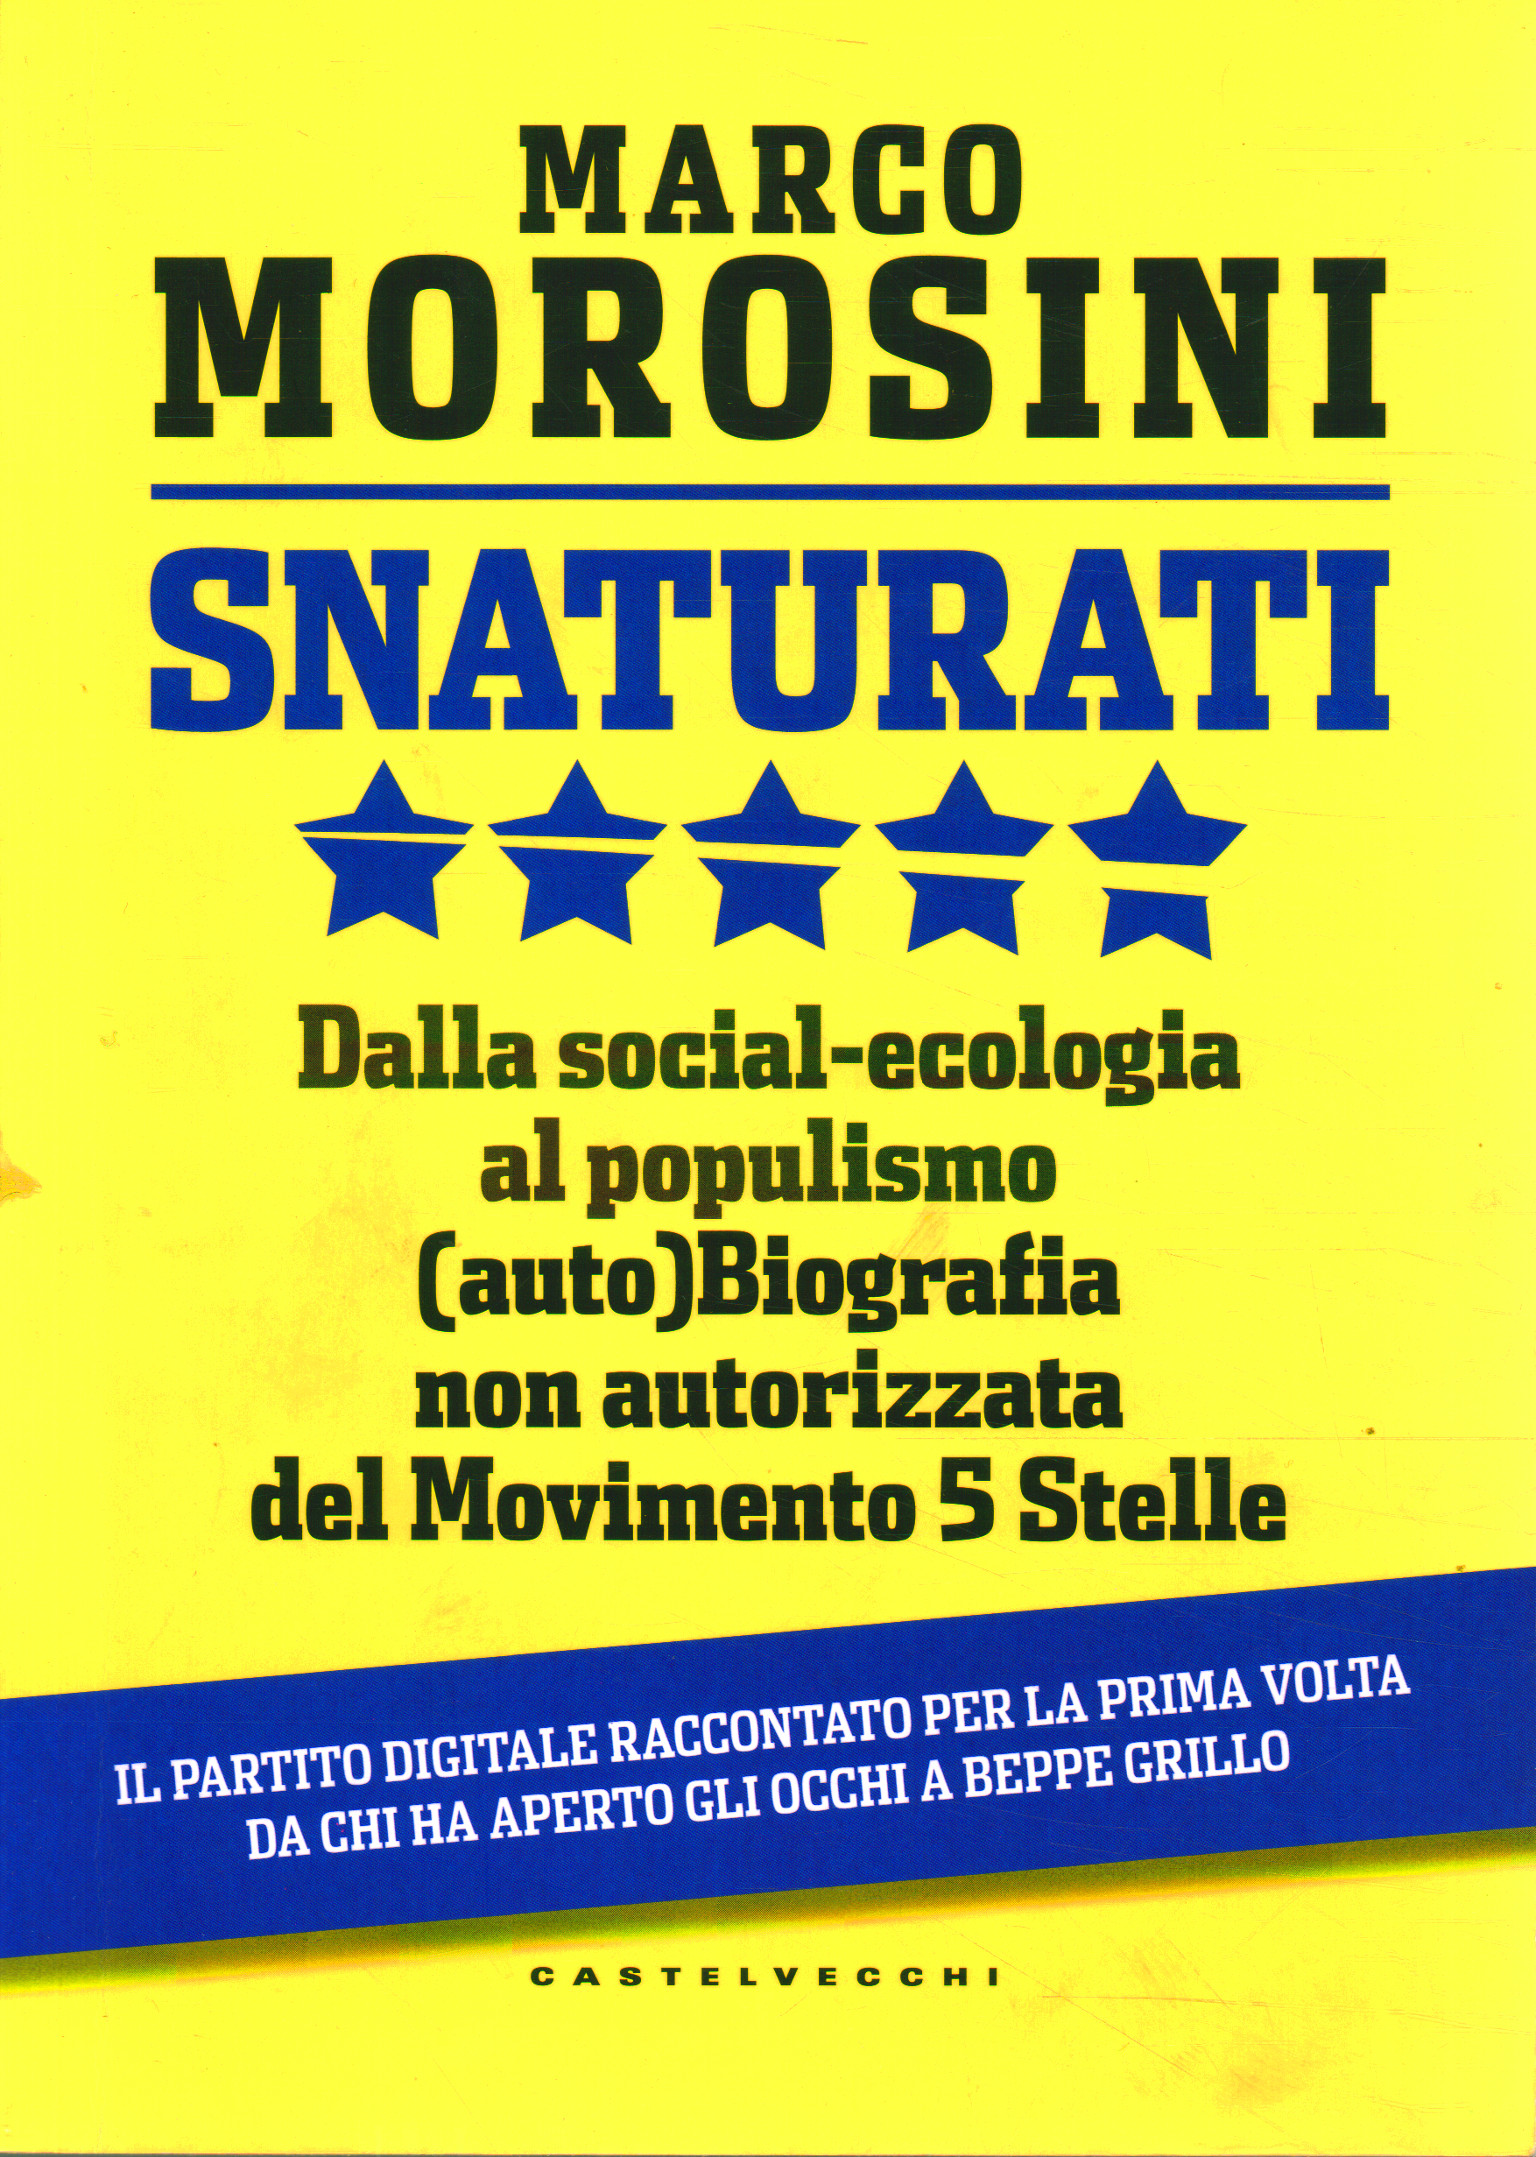 Unnatured, Marco Morosini